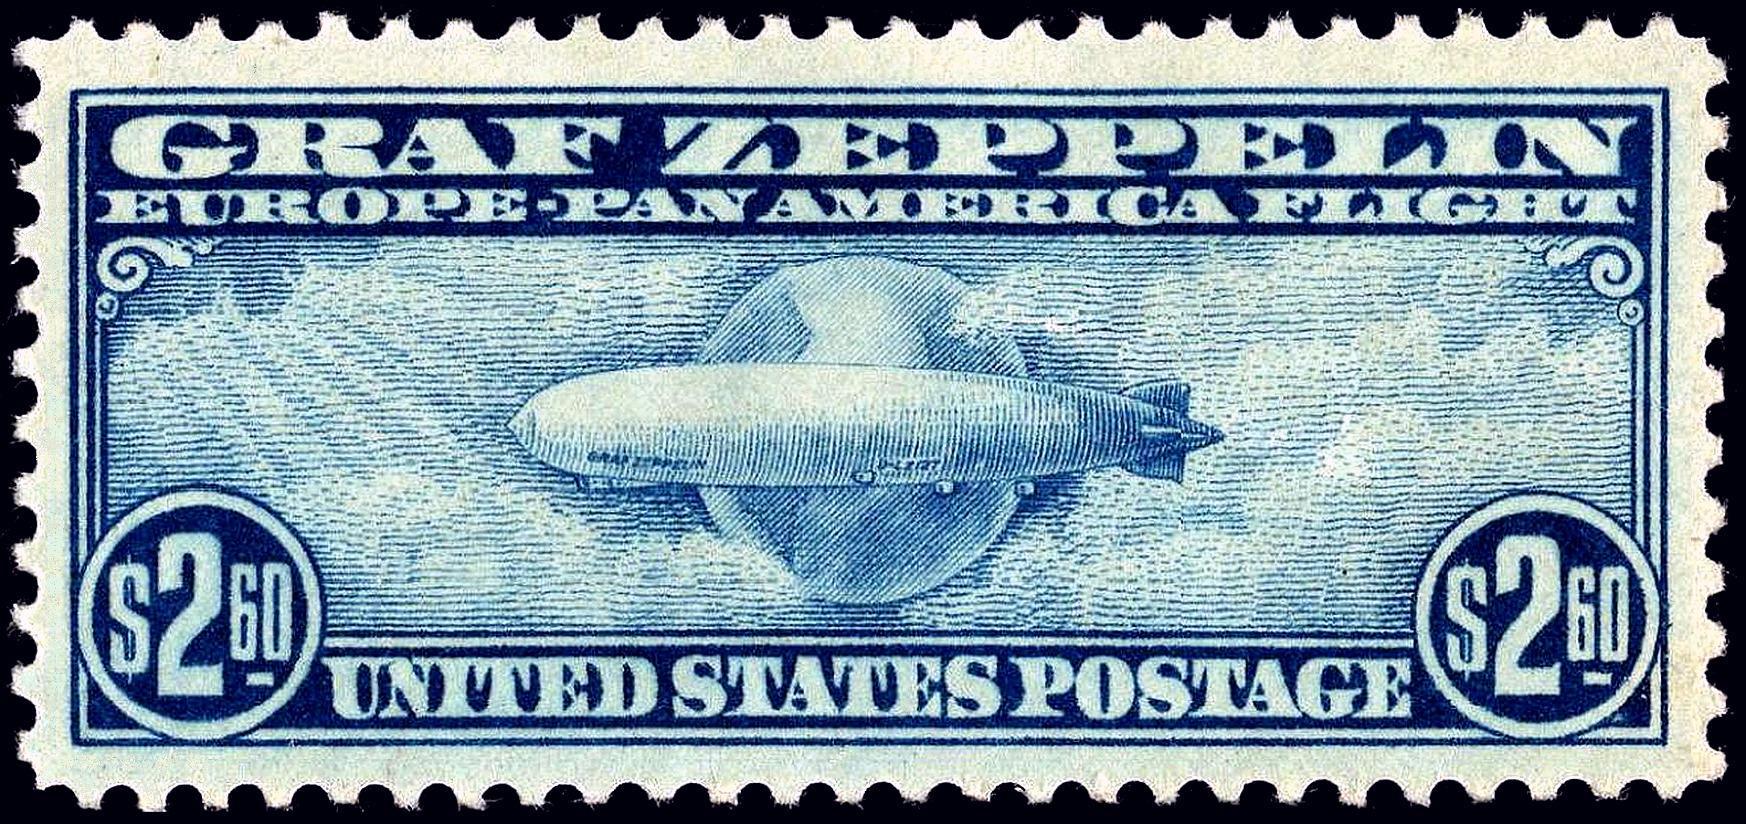 Mint stamp - Wikipedia